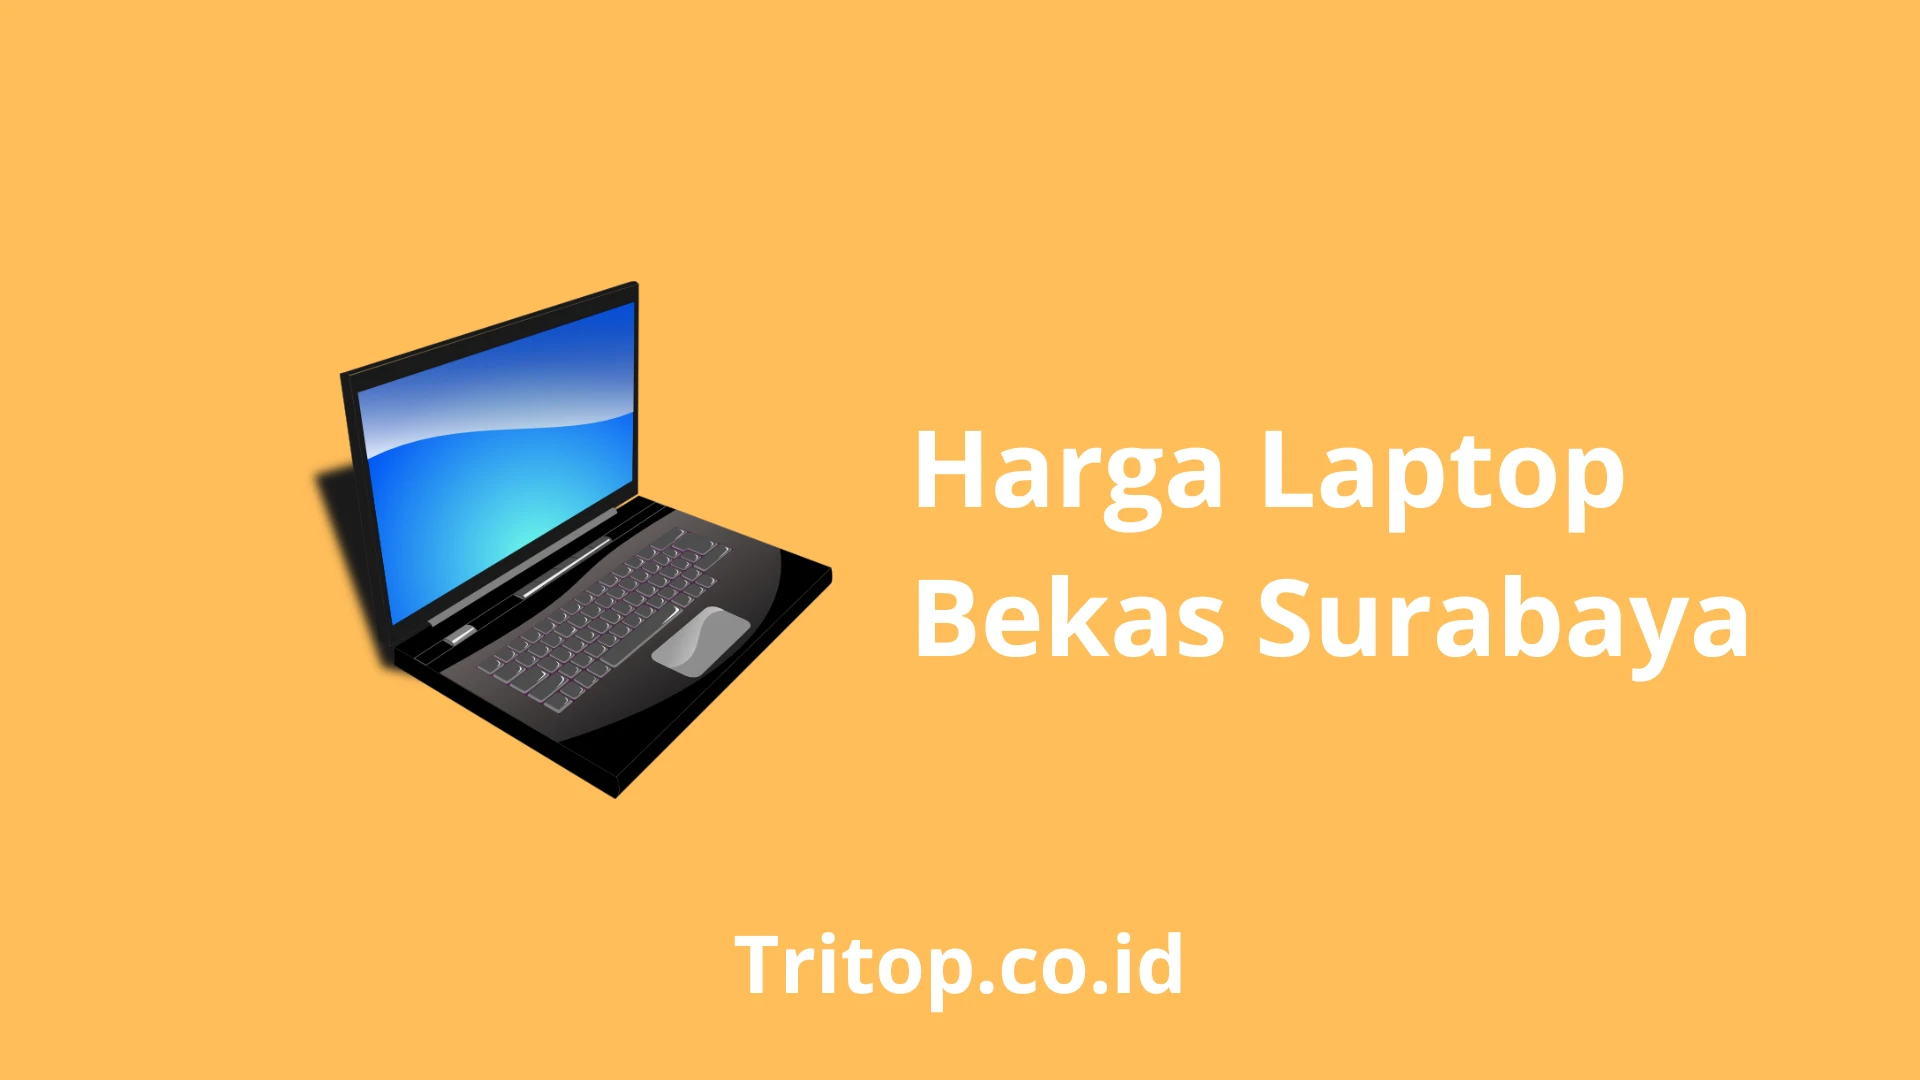 Harga Laptop Bekas Surabaya Tritop.co.id